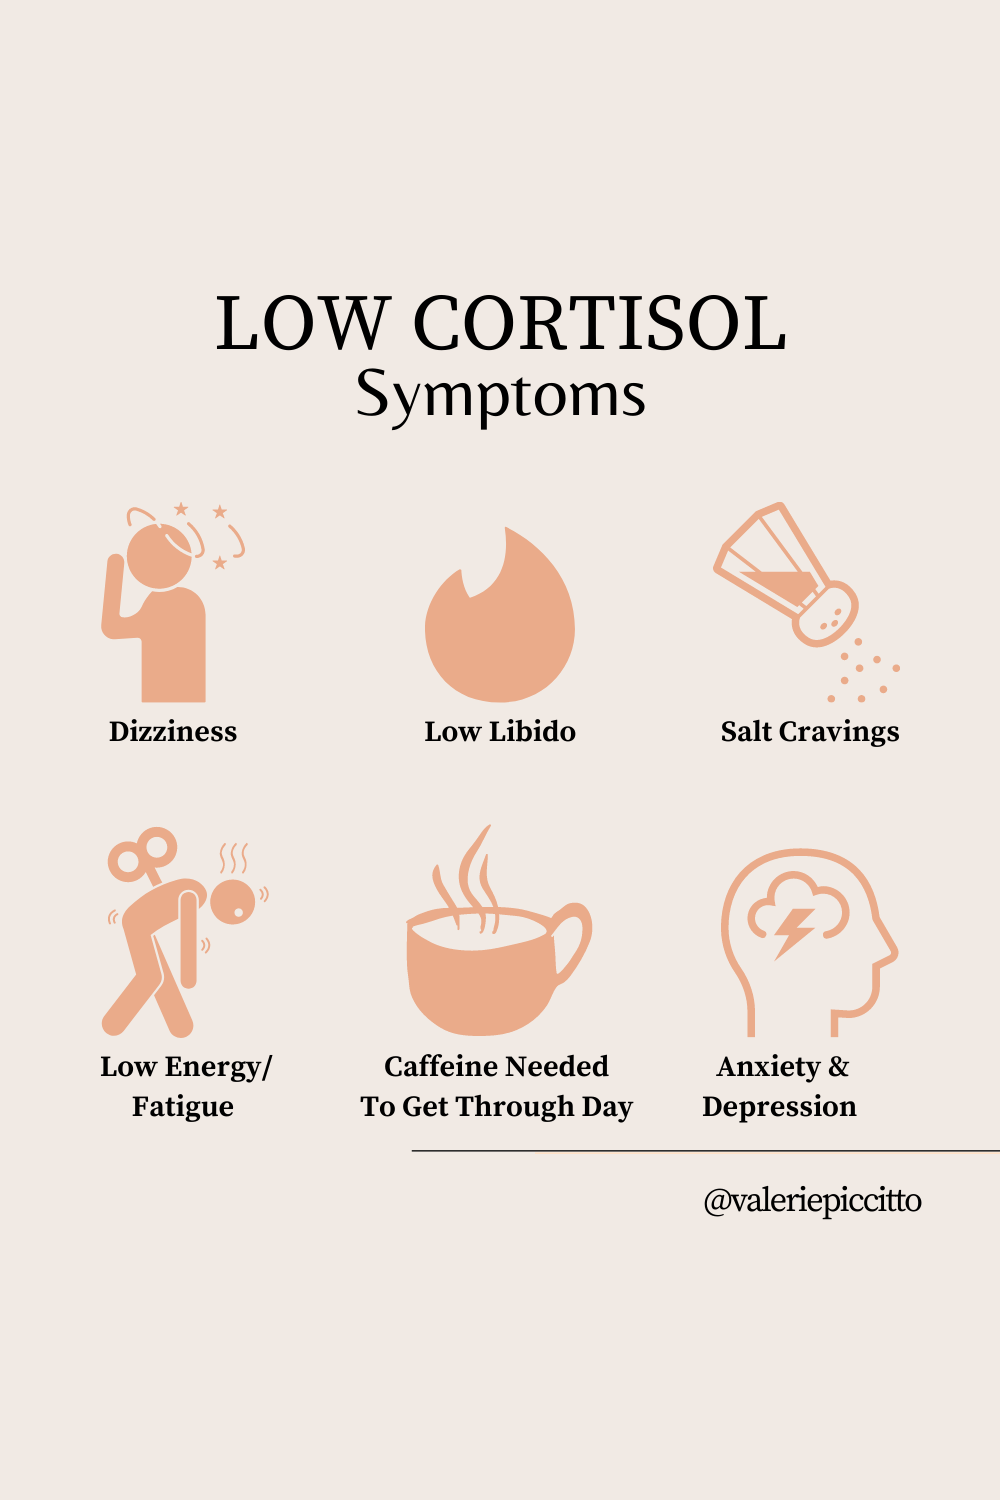 Low cortisol symptoms